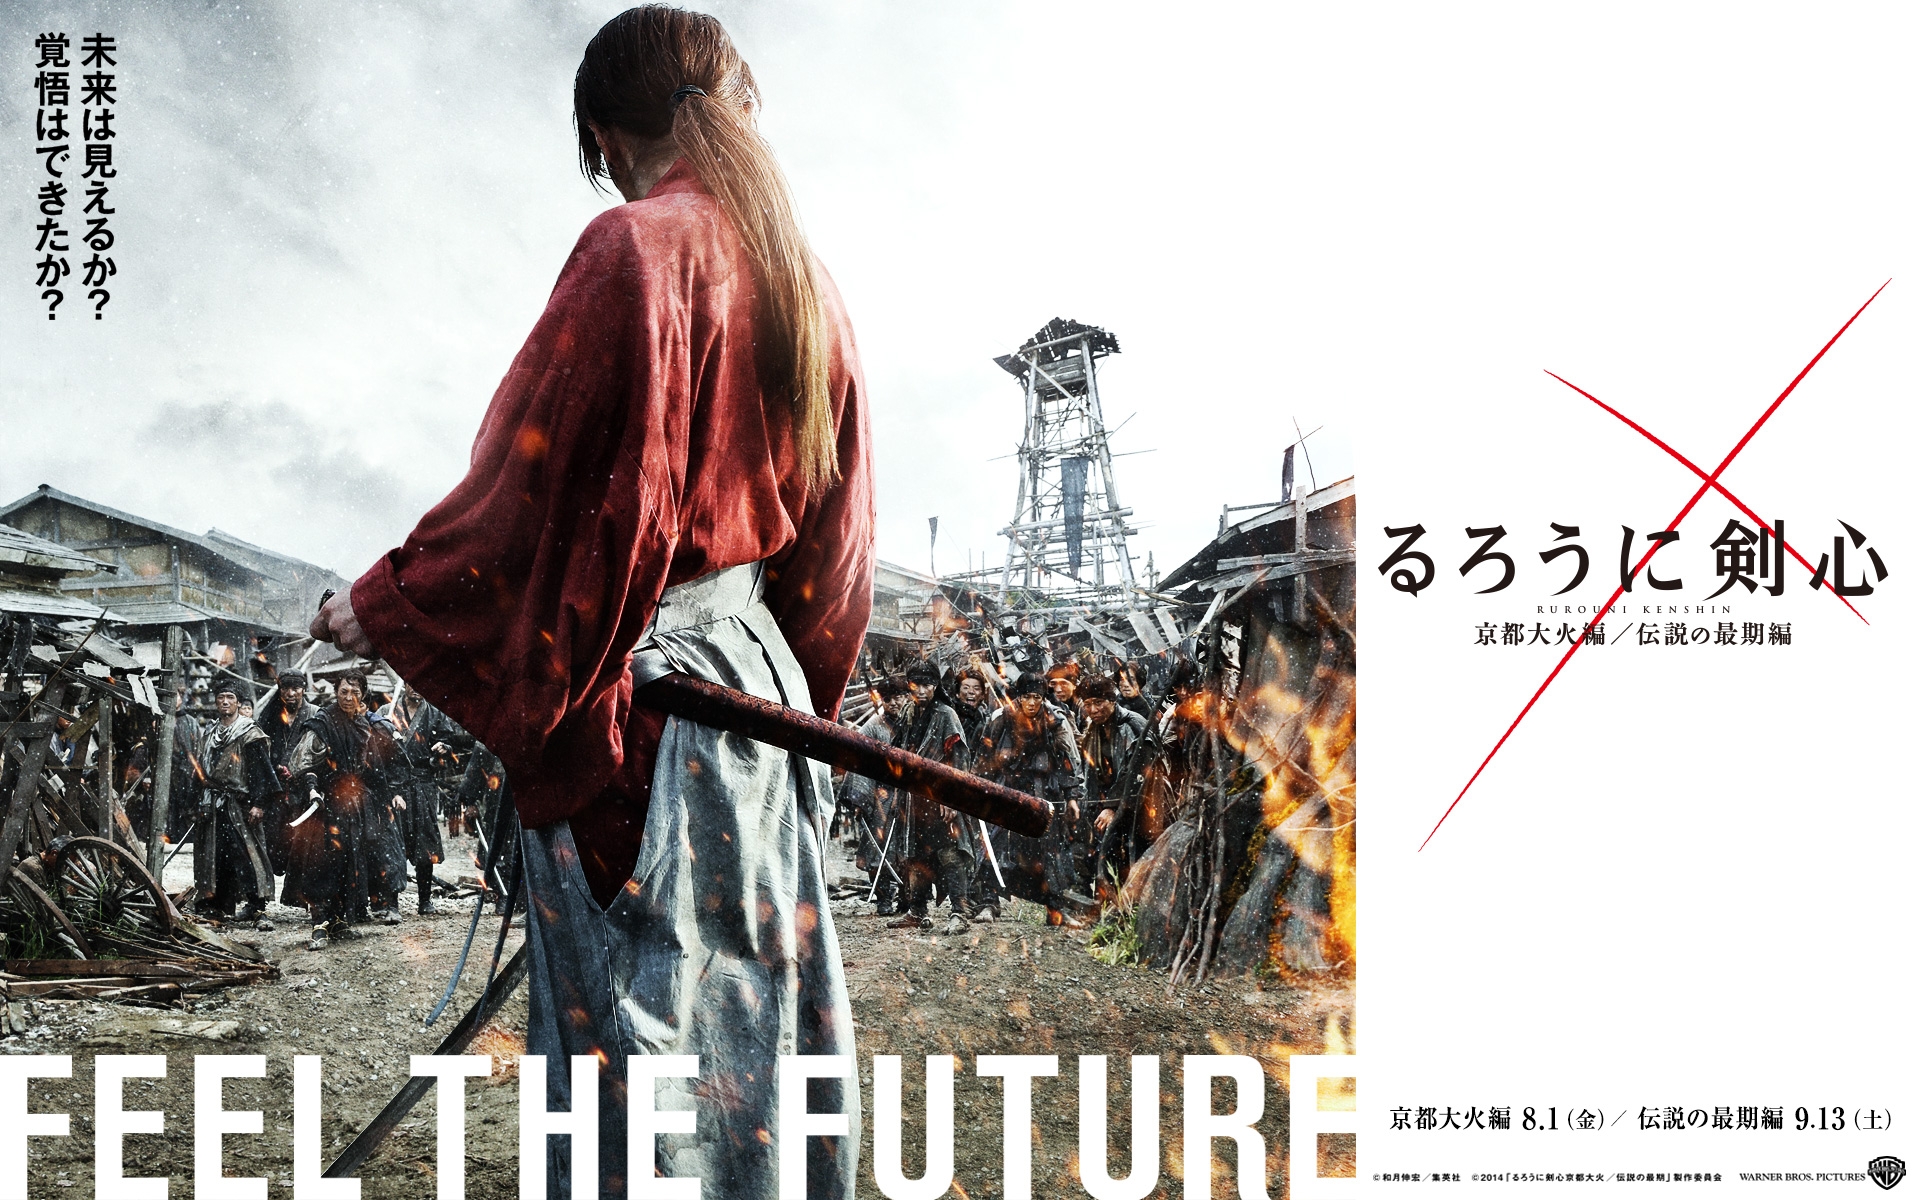 Rurouni Kenshin: Kyoto Taika-hen na Tokyo 3 na Tokyo 3